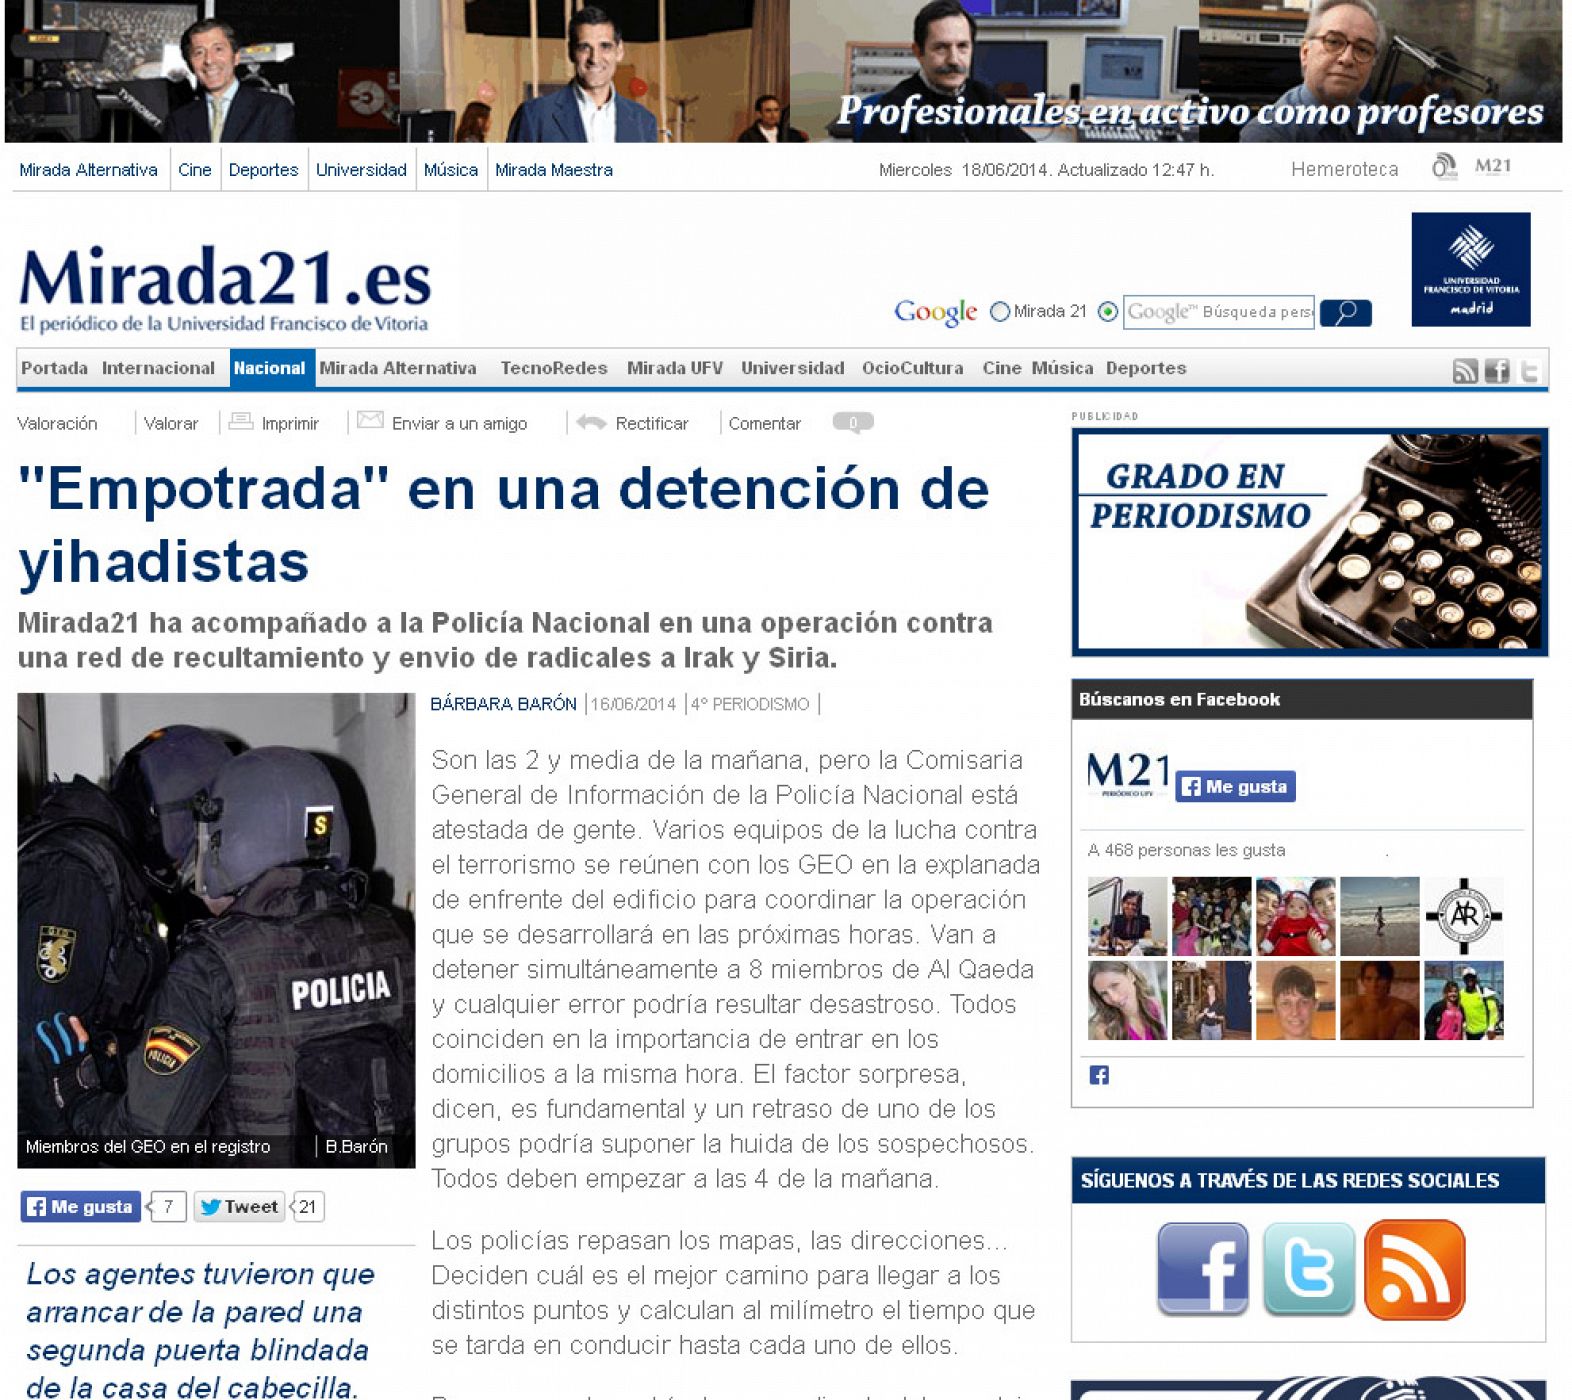 Reportaje publicado por Barbara Barón en Mirada 21.es.